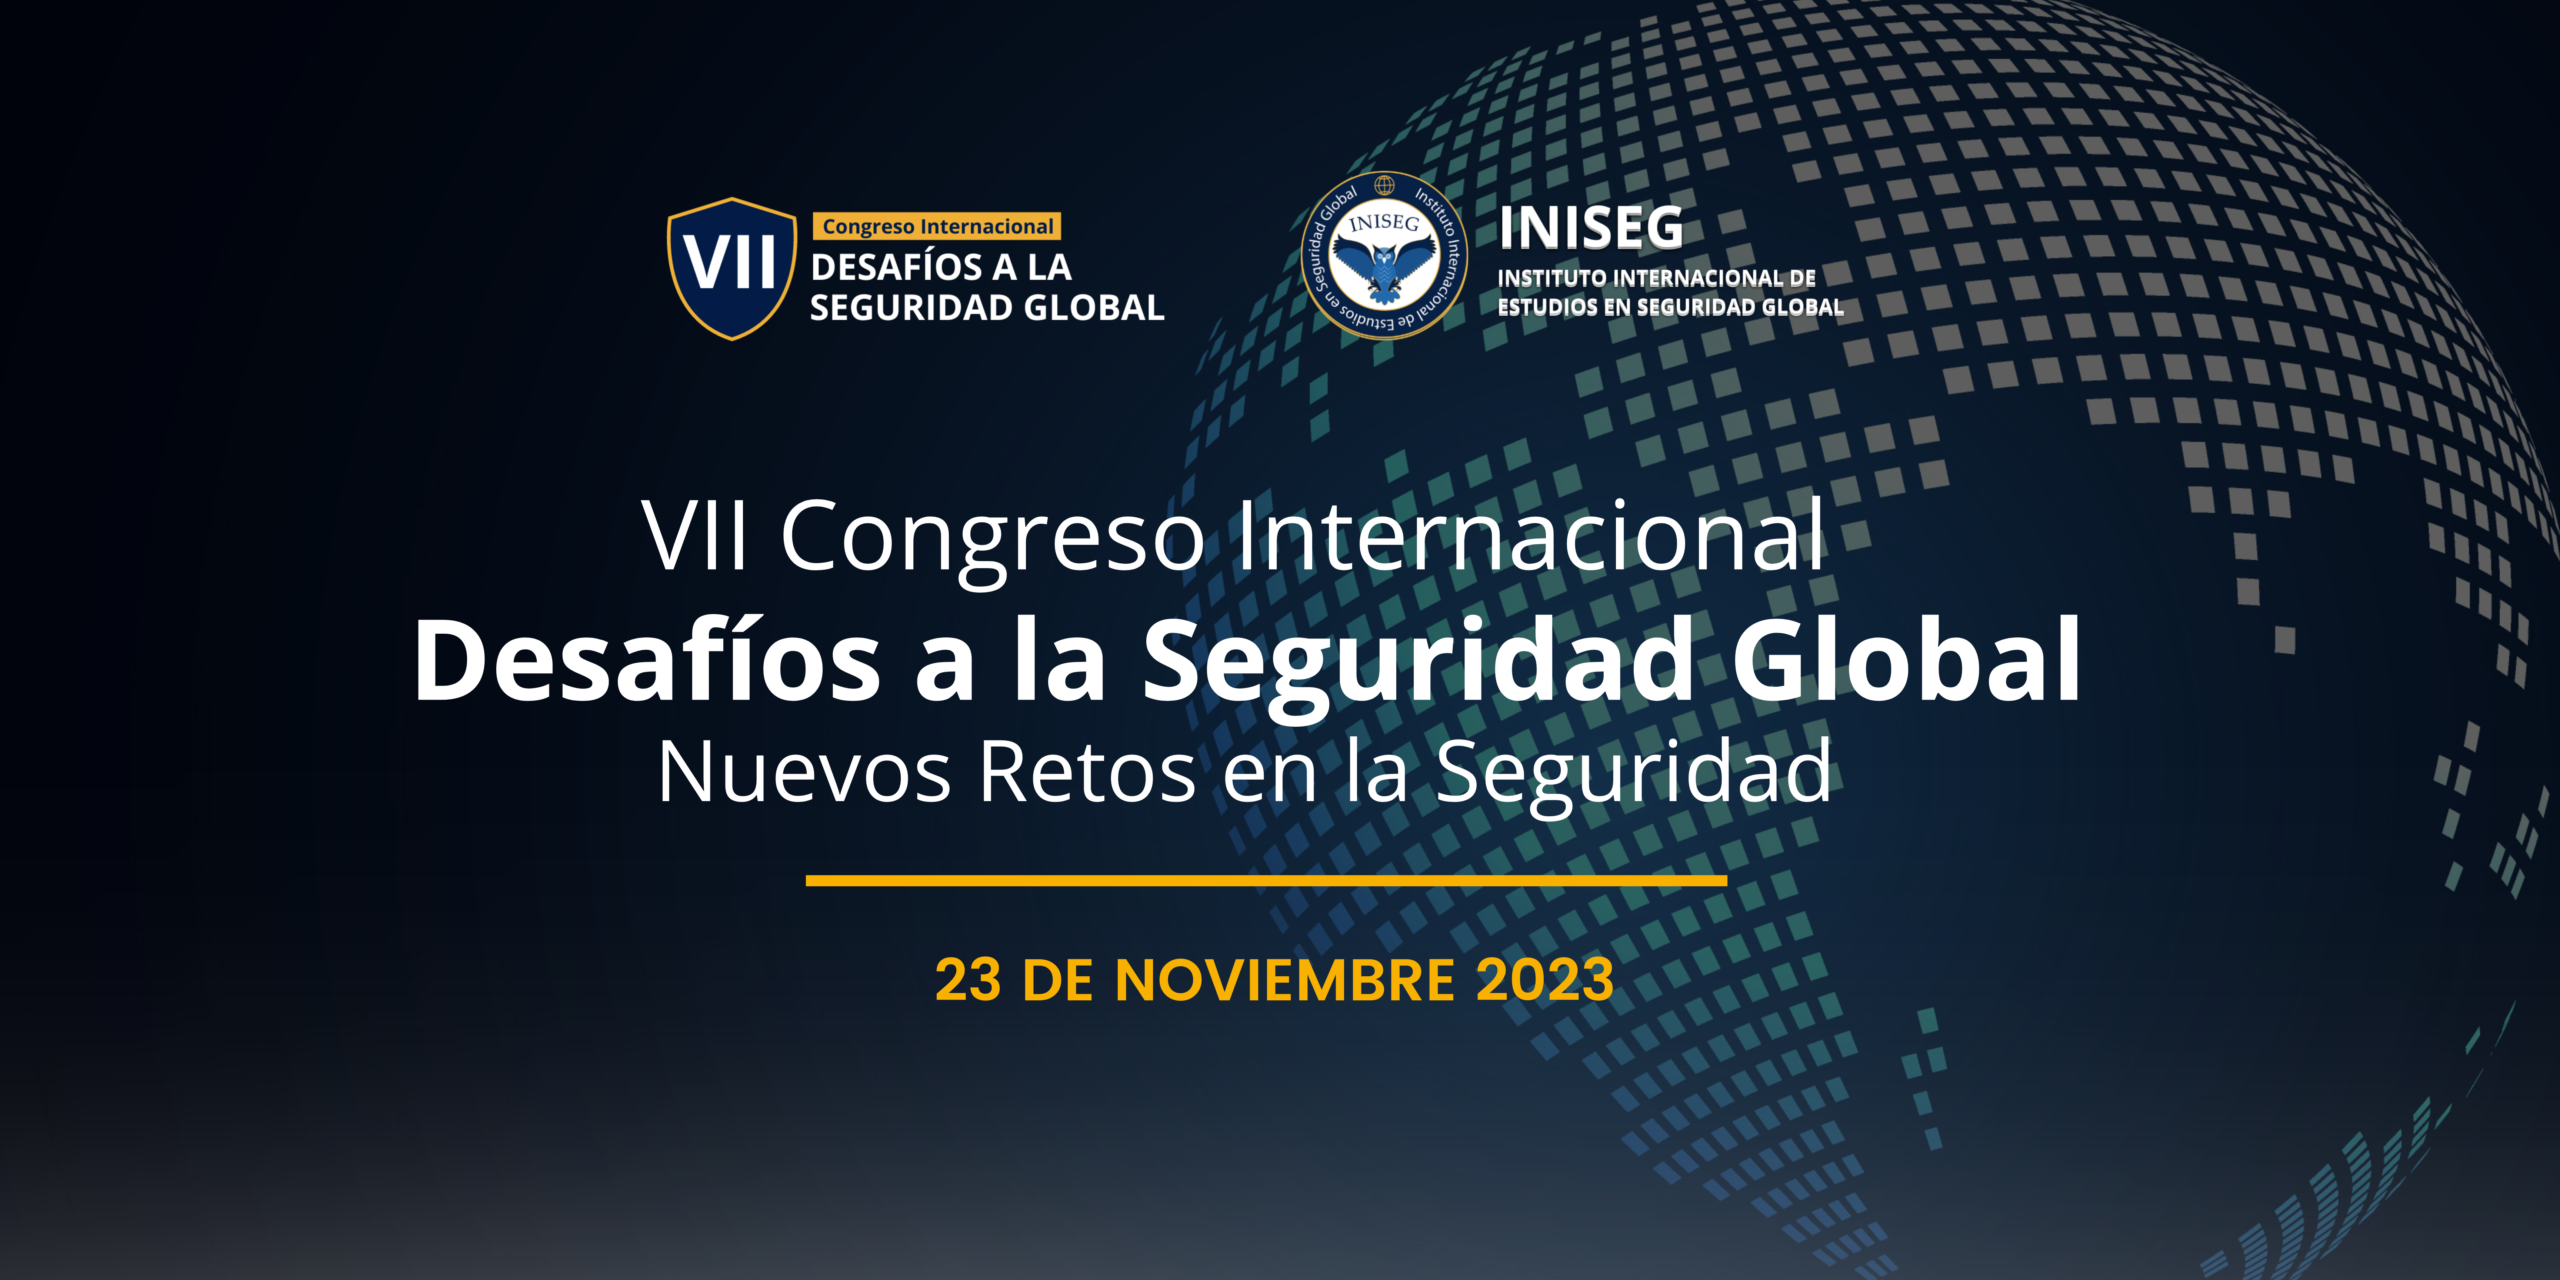 El VII Congreso Internacional de INISEG aborda los nuevos retos en seguridad global